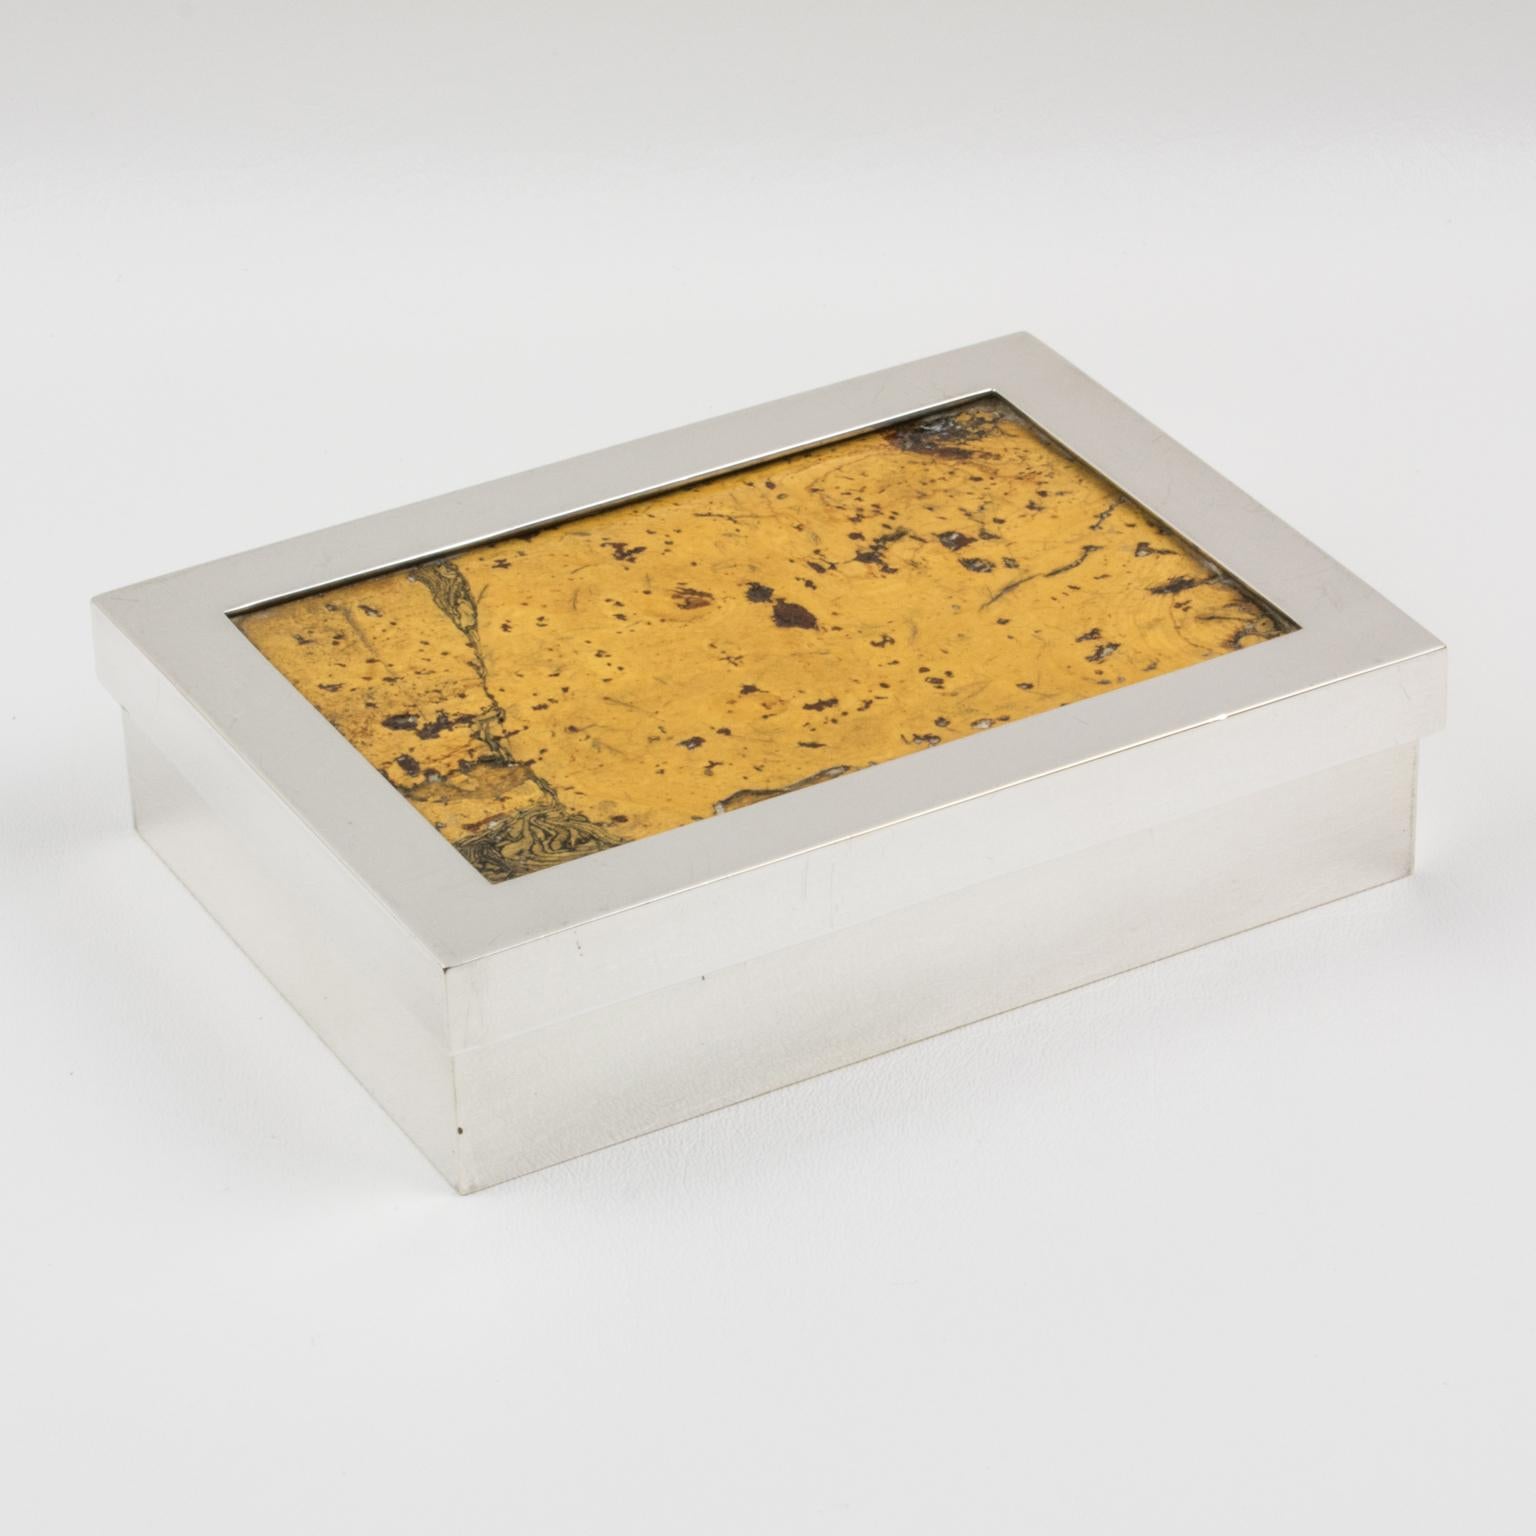 French Debladis Paris Art Deco Silver Plate and Cork Decorative Box, 1940s